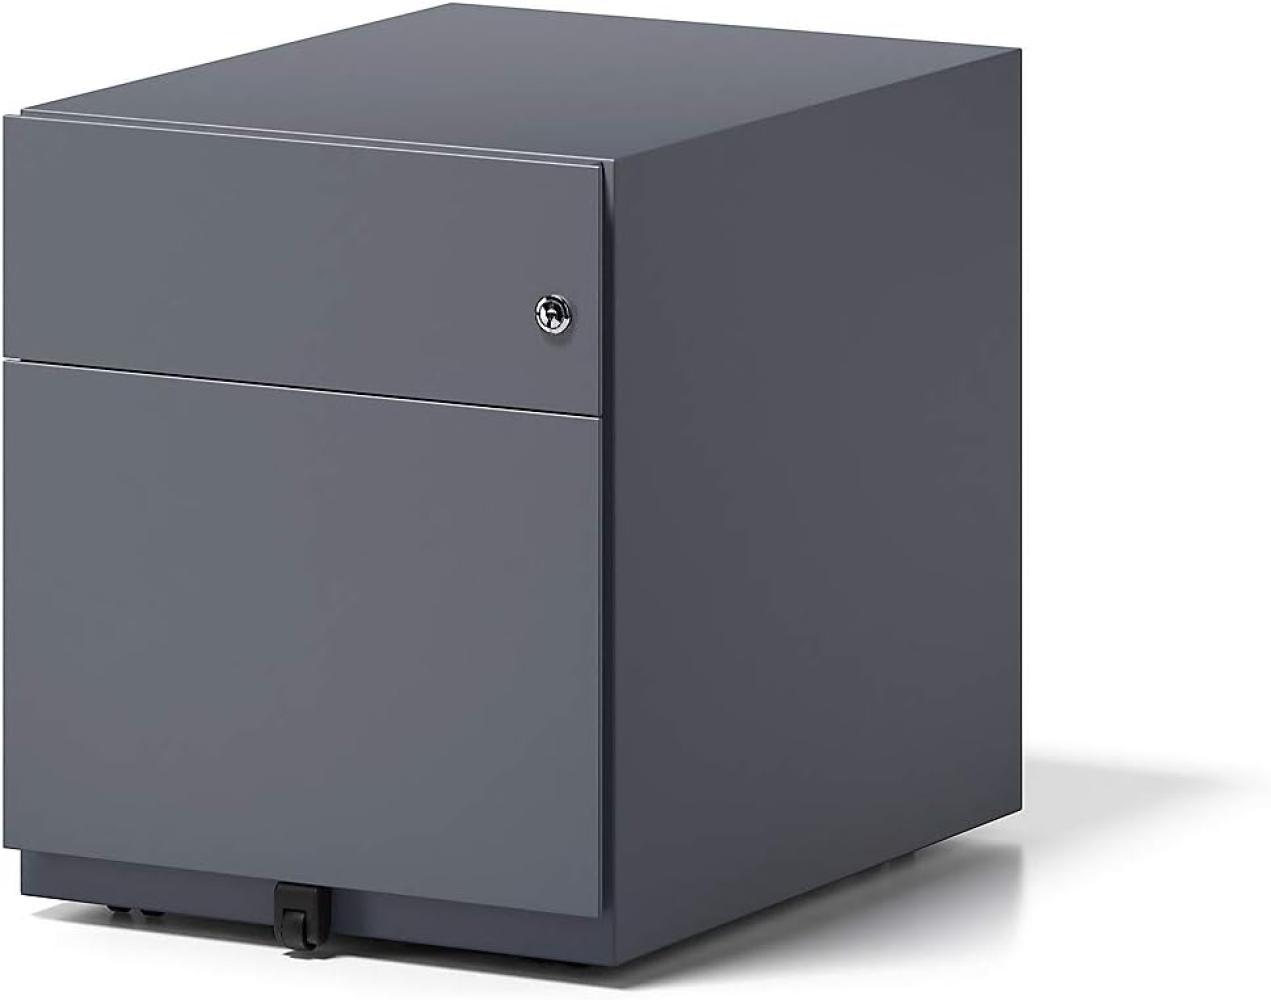 Rollcontainer Note™ mit Griffleiste, 1 Universalschublade, 1 HR-Schublade, Farbe anthrazitgrau Bild 1